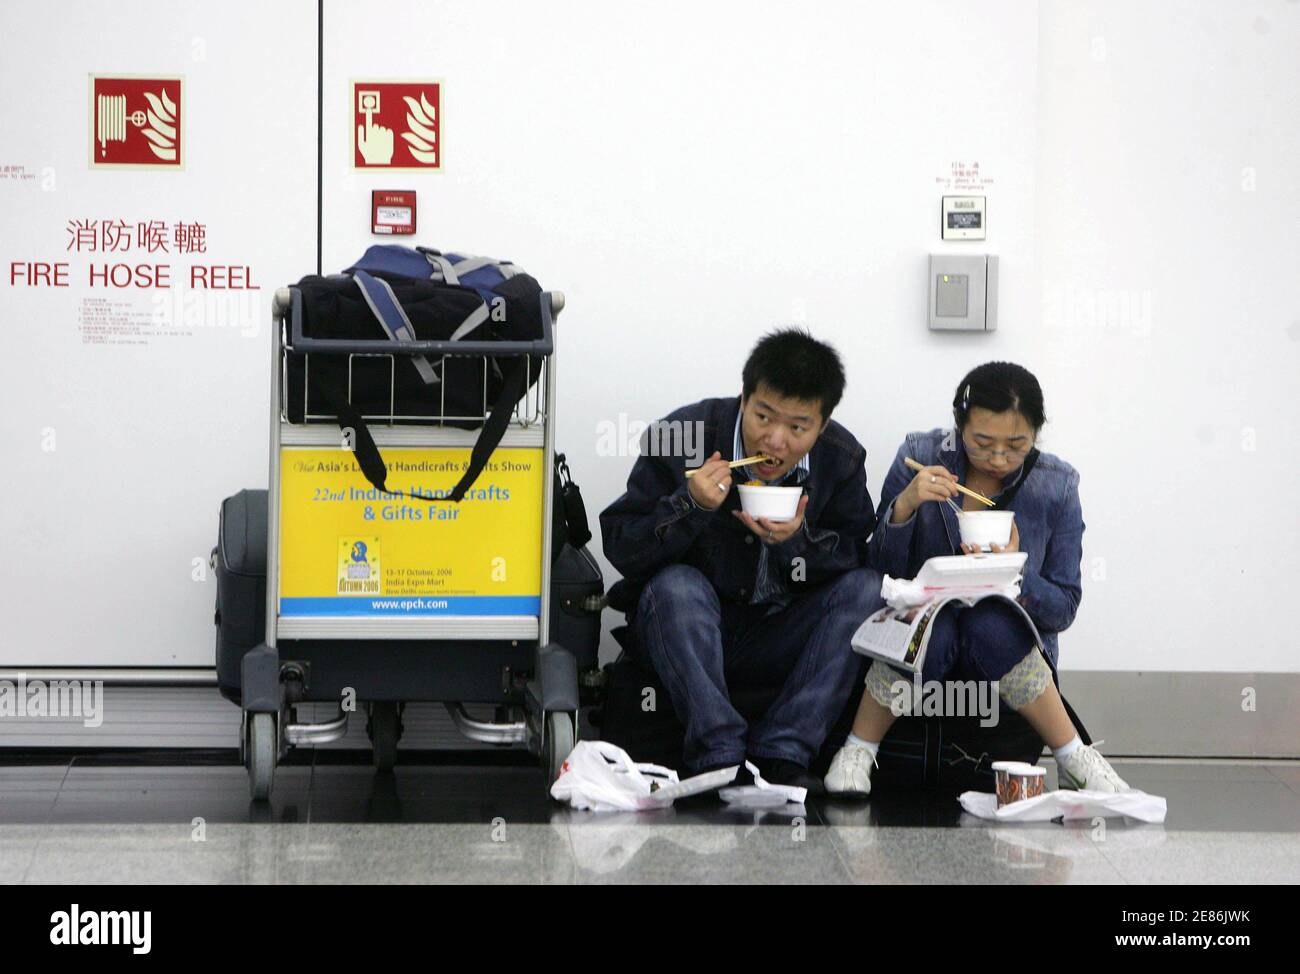 Passagiere essen Nudeln am Hong Kong International Airport 3. August 2006. Obwohl Hongkong einen Volltreffer von Prapiroon verschont werden dürfte, haben starke Winde 159 Flüge, verzögert, während 92 abgesagt wurden und 70 wurden an andere Orte nach der Airport Authority umgeleitet. Rund 3.000 Passagiere haben auf dem Flughafen, während ein weiterer 300 Flüge wahrscheinlich bis Mitternacht gestört werden geerdet.     REUTERS/Paul Yeung (HONG KONG) Stockfoto